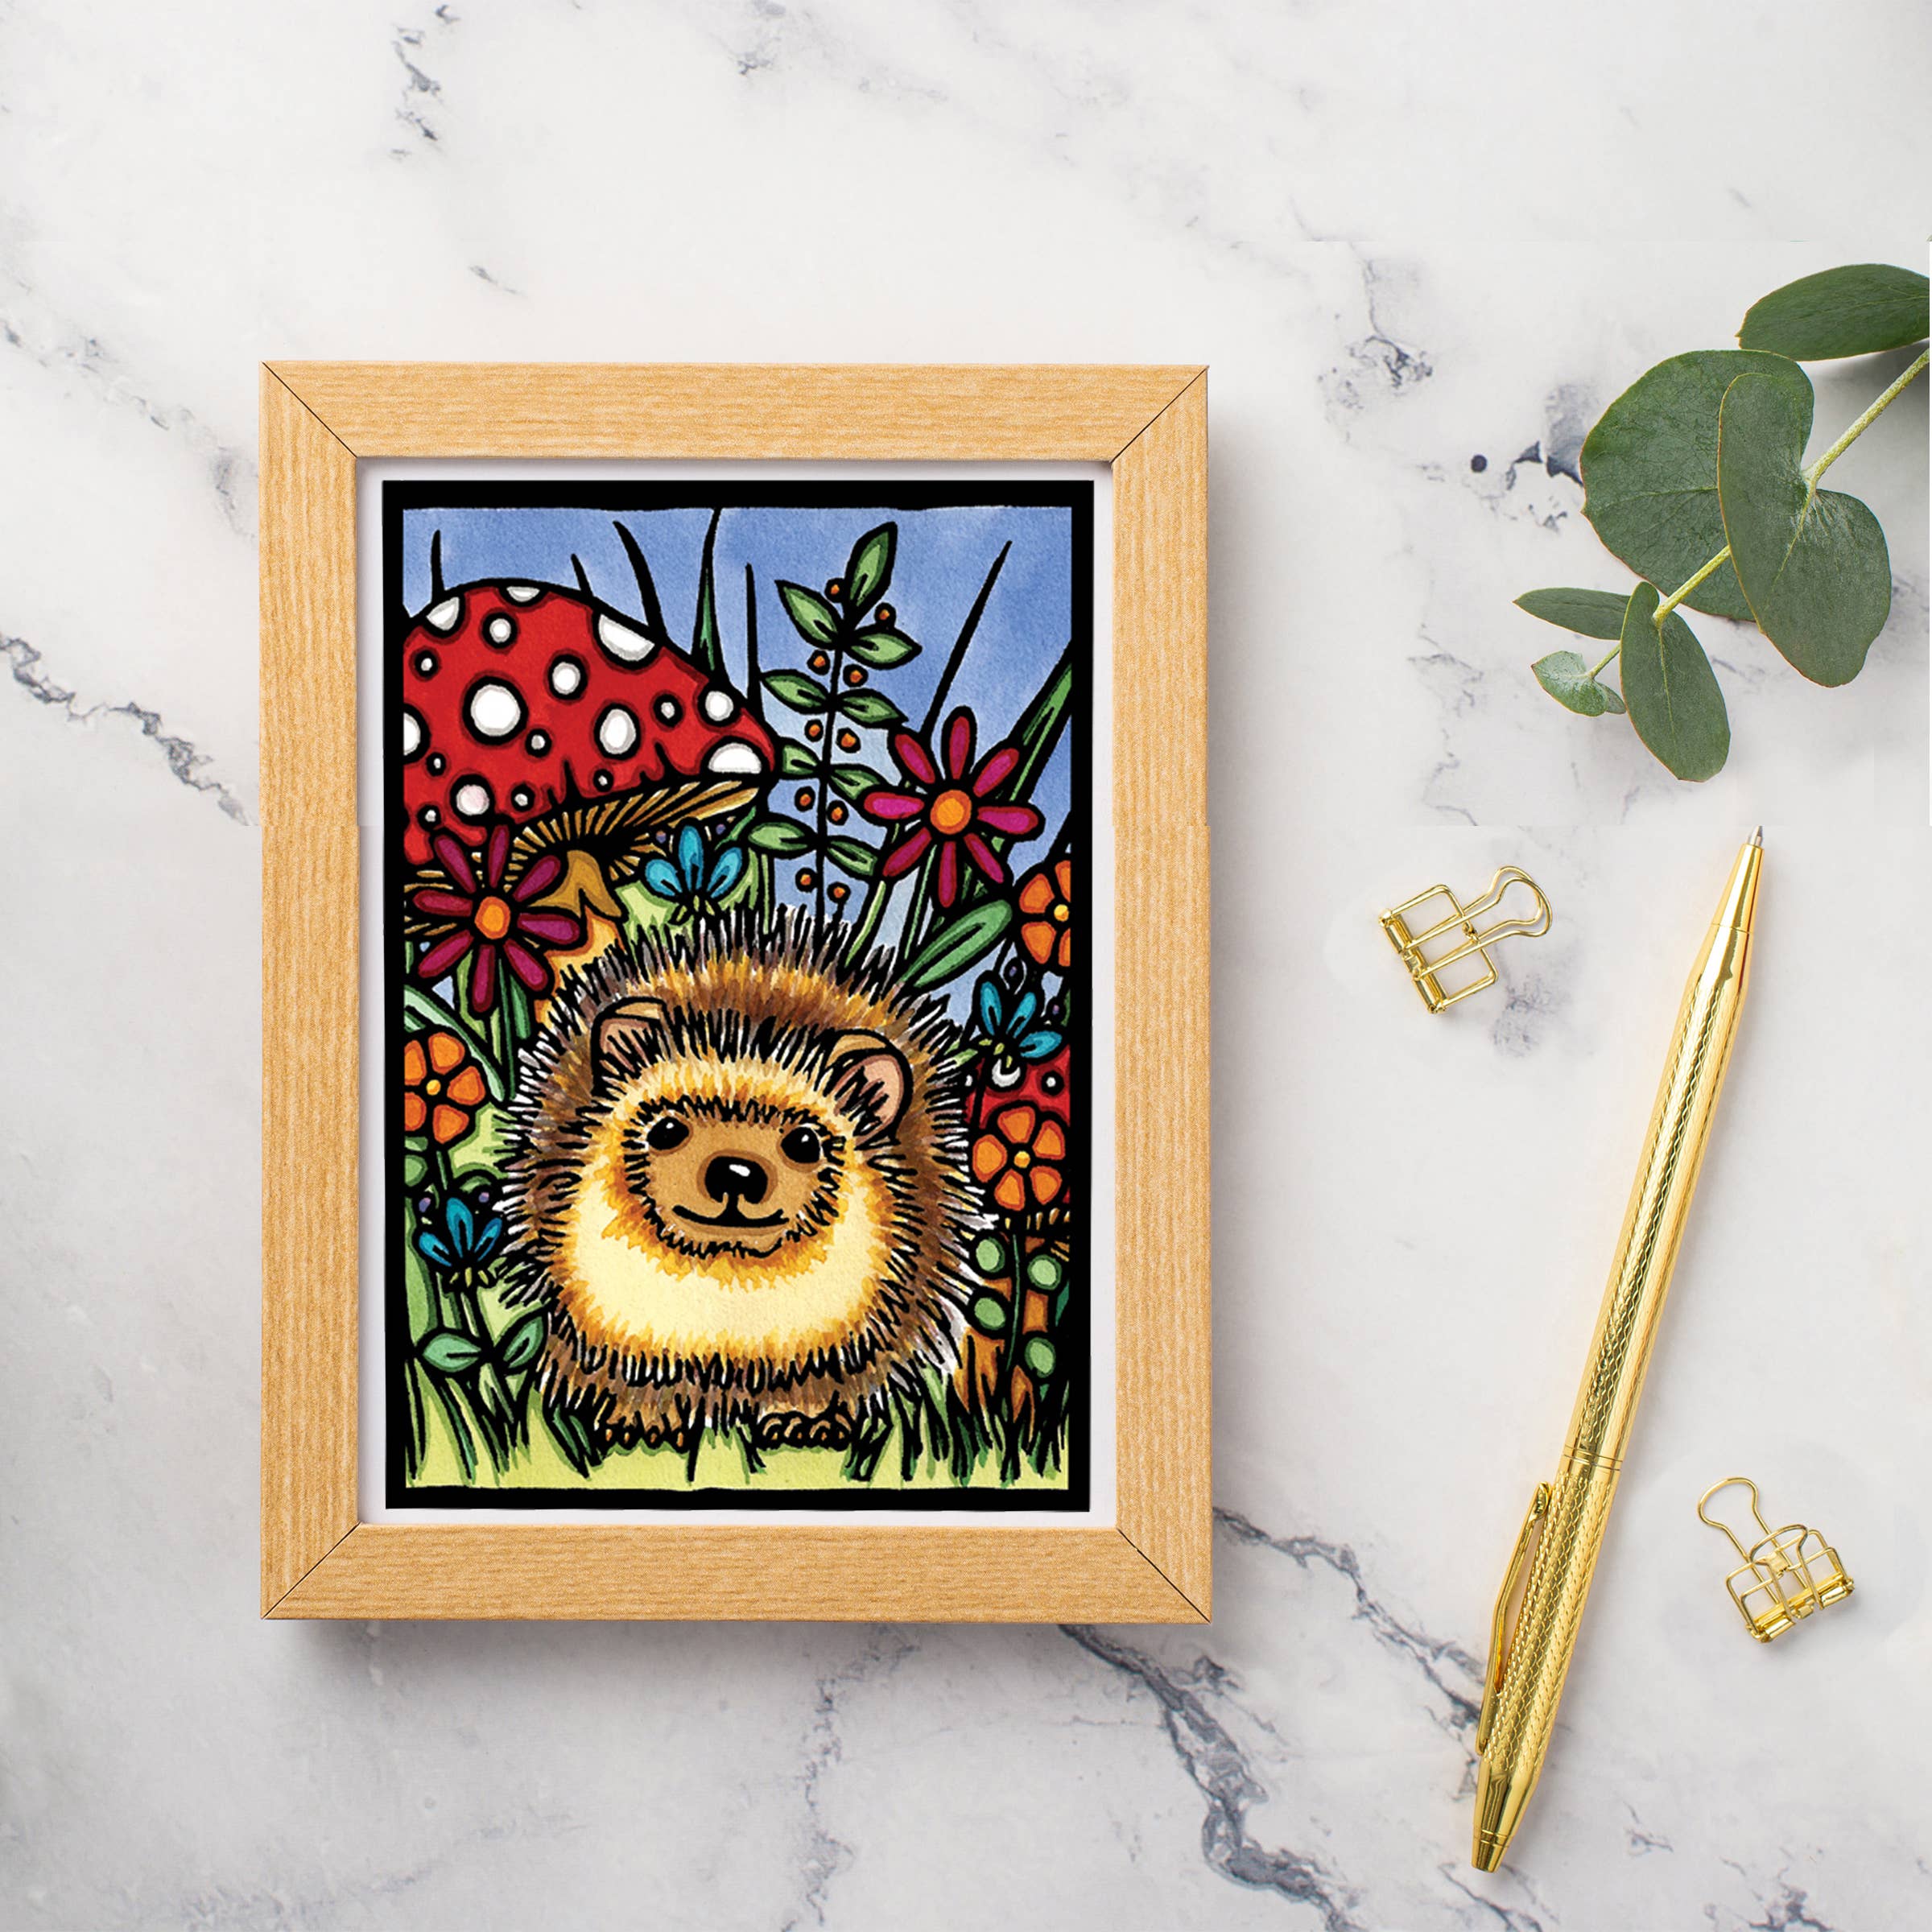 Greeting Card: Hedgehog by Sarah Angst